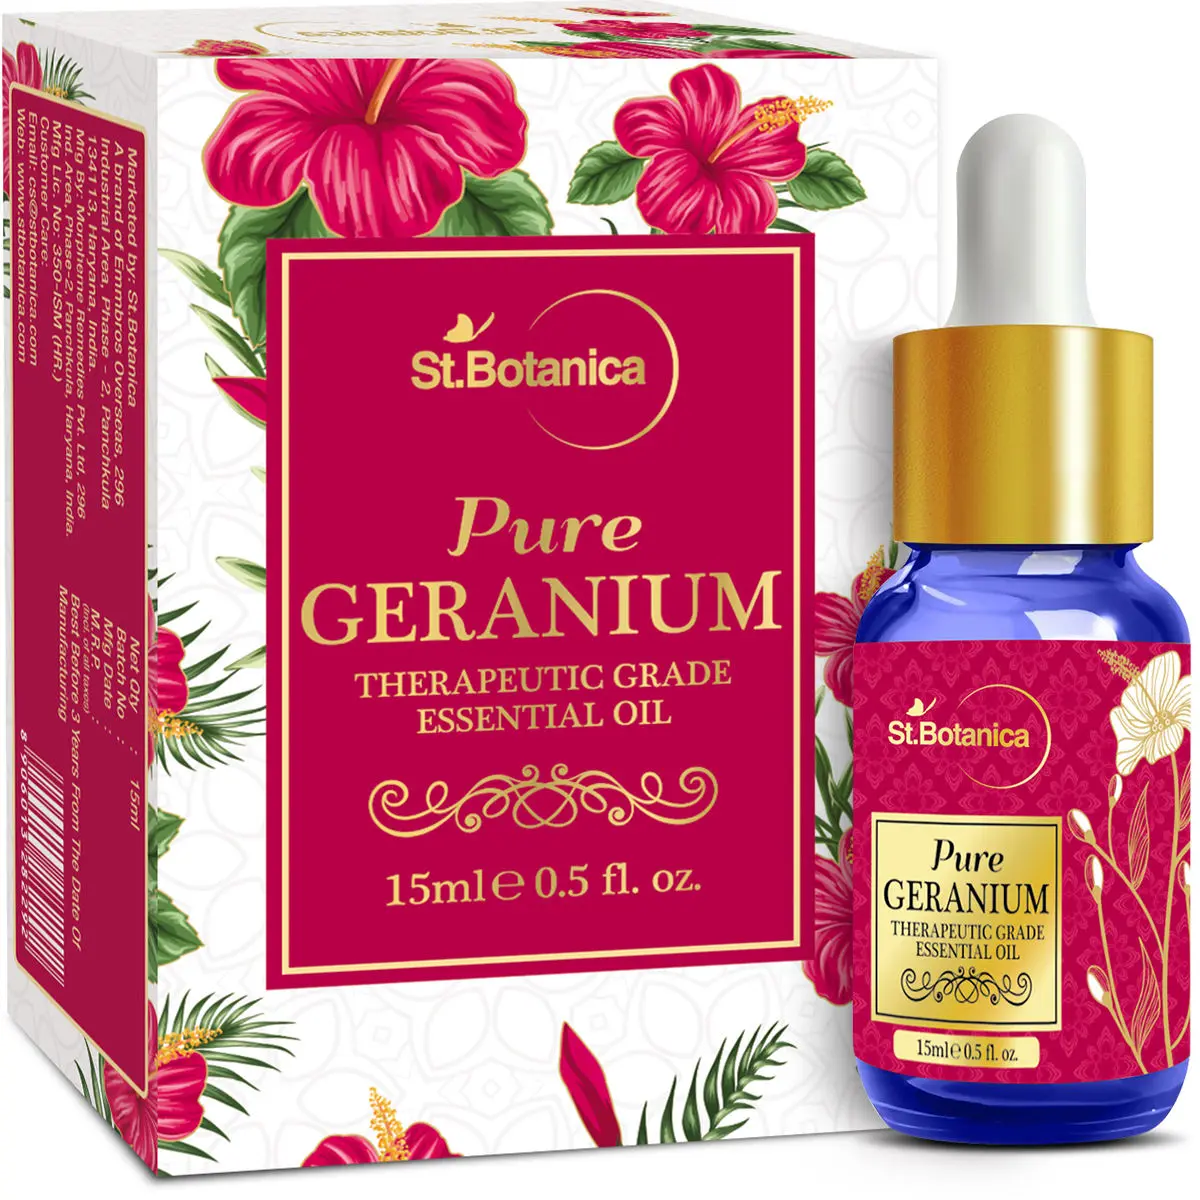 St.Botanica Pure Geranium Therapeutic Grade Essential Oil (15 ml)